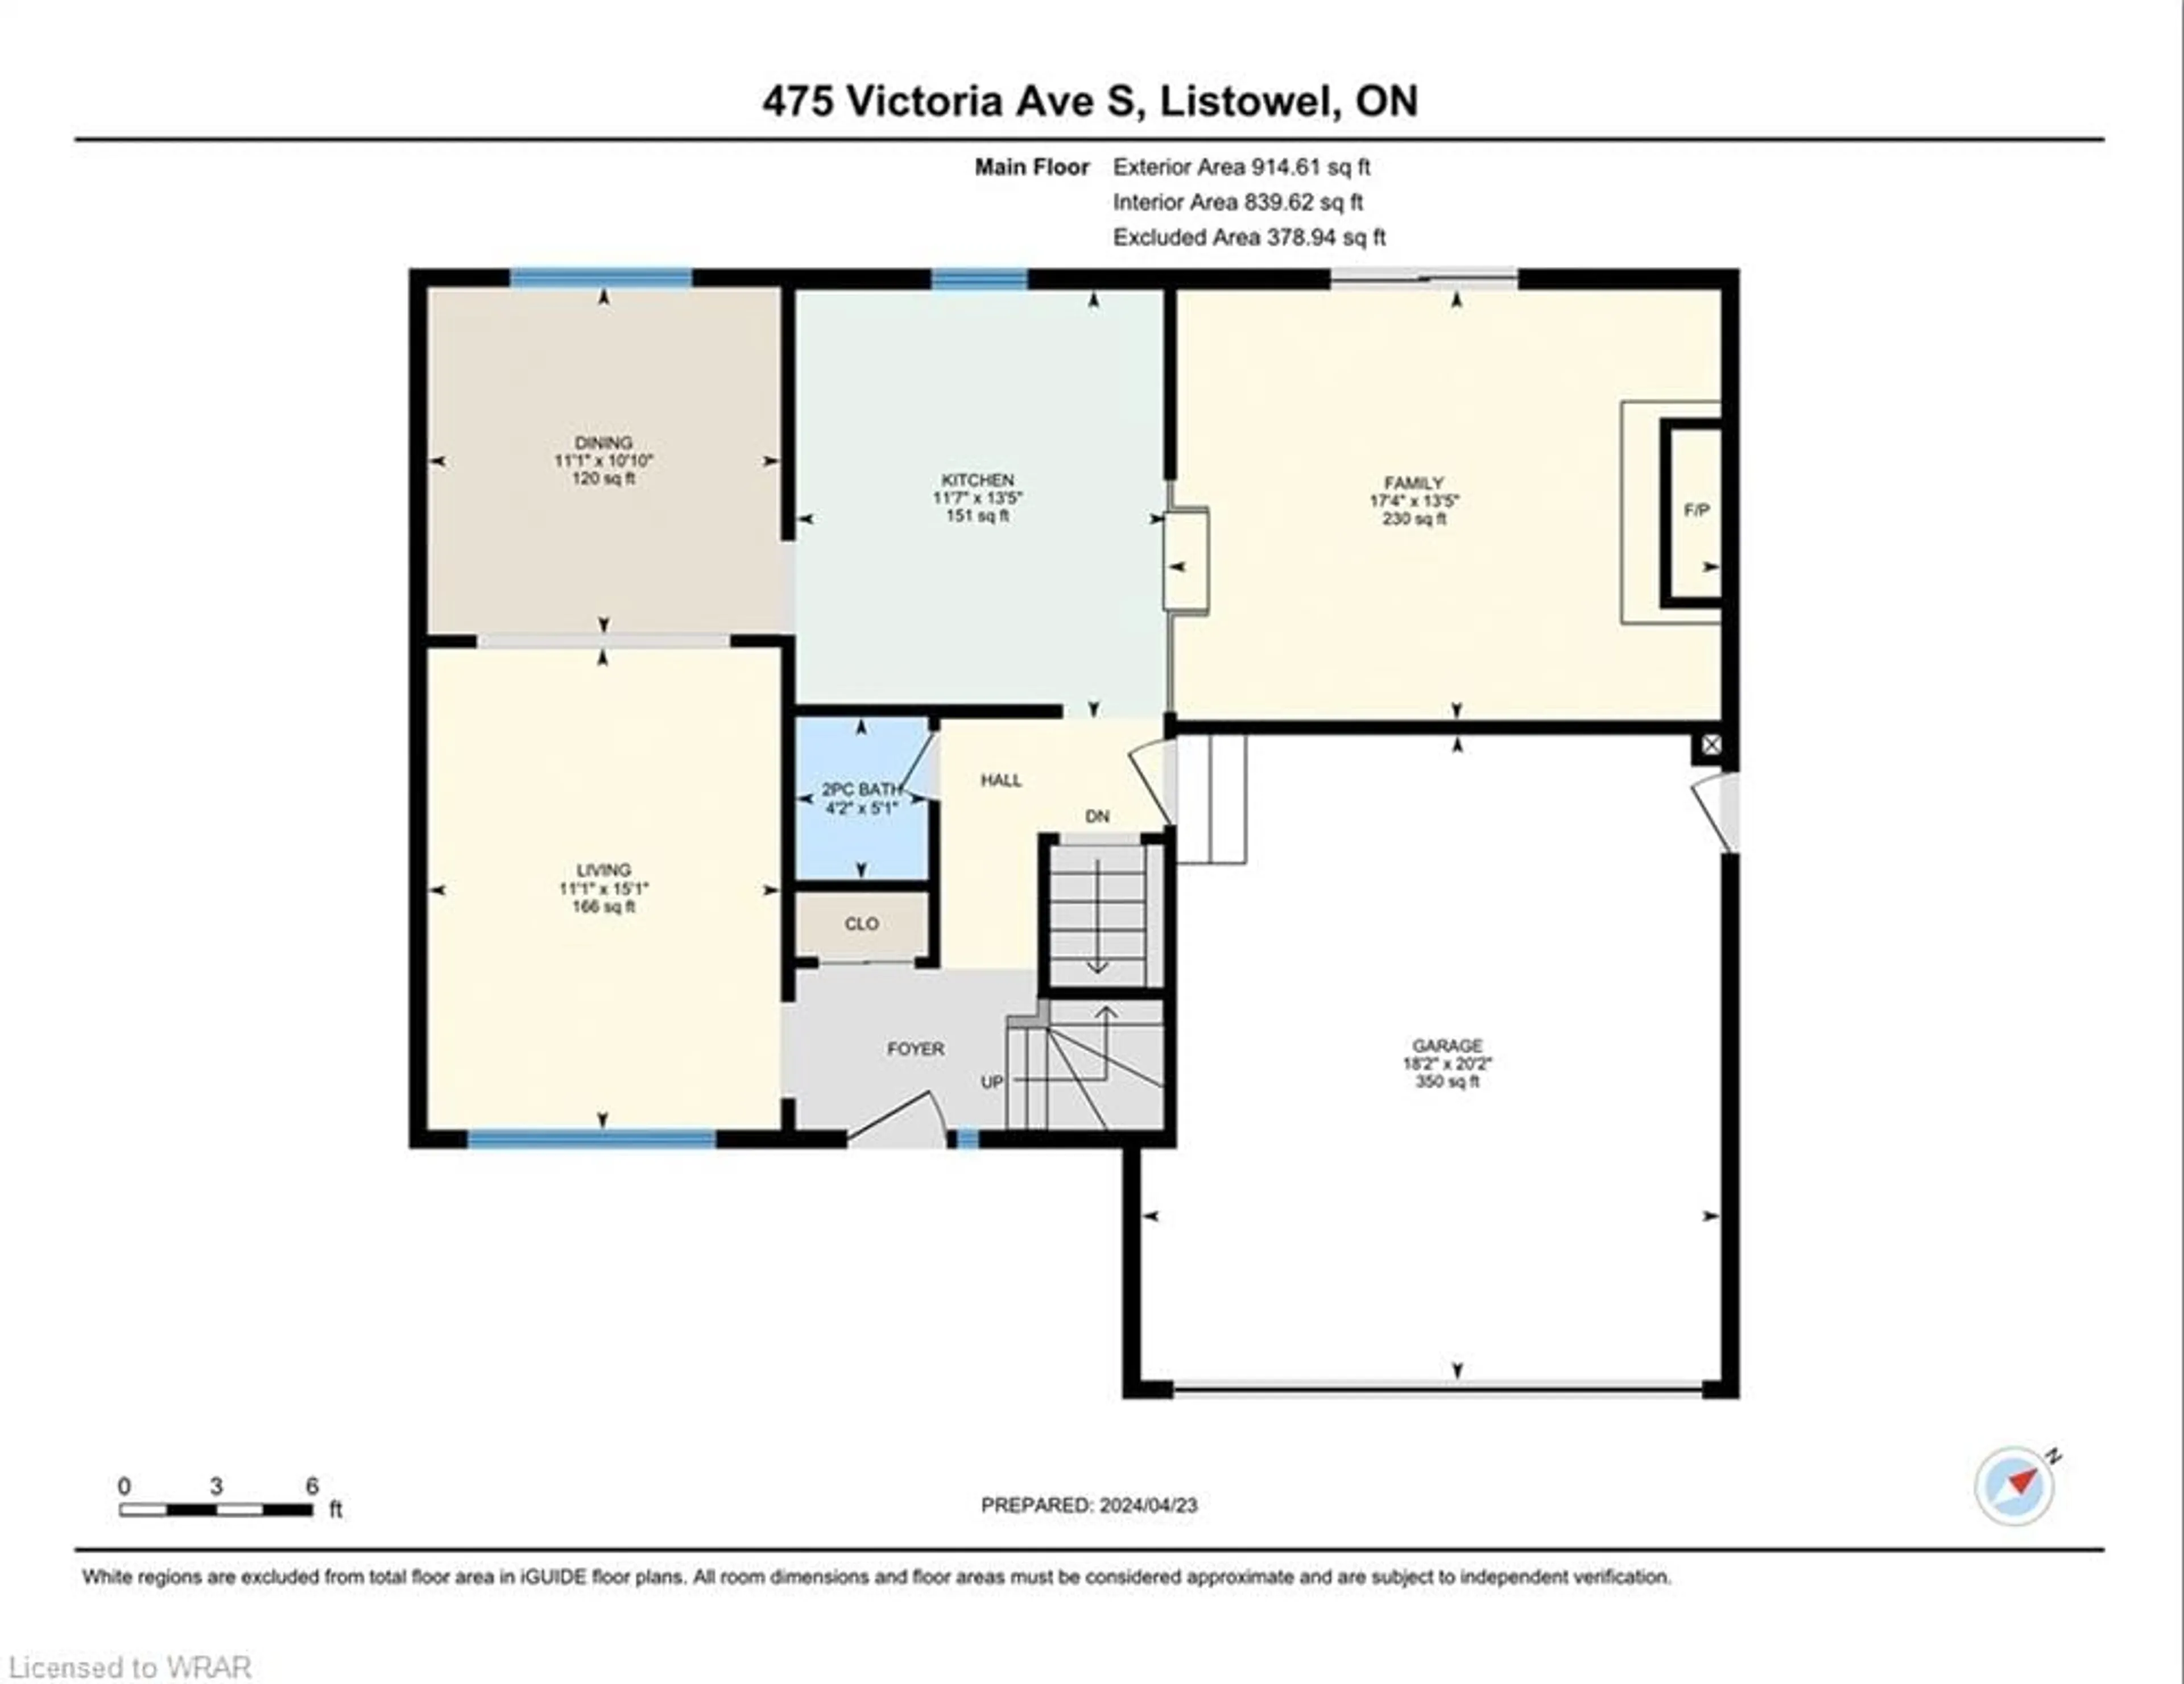 Floor plan for 475 Victoria Ave, Listowel Ontario N4W 3N7